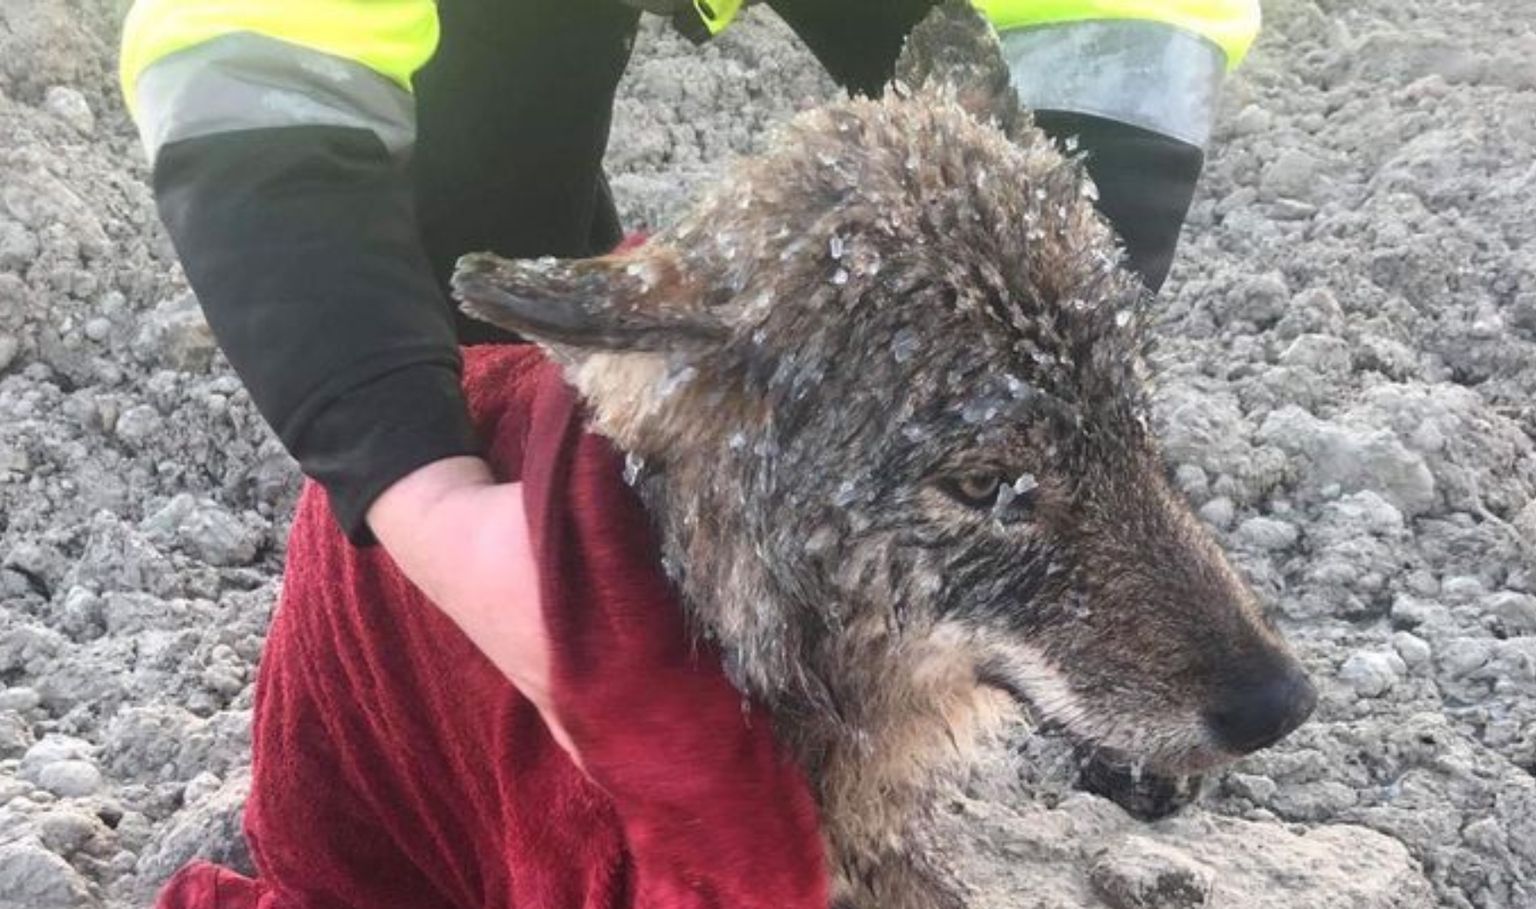 Igaunijā no ledainas upes izglābj slīkstošu suni - taču tas patiesībā izrādās vilks